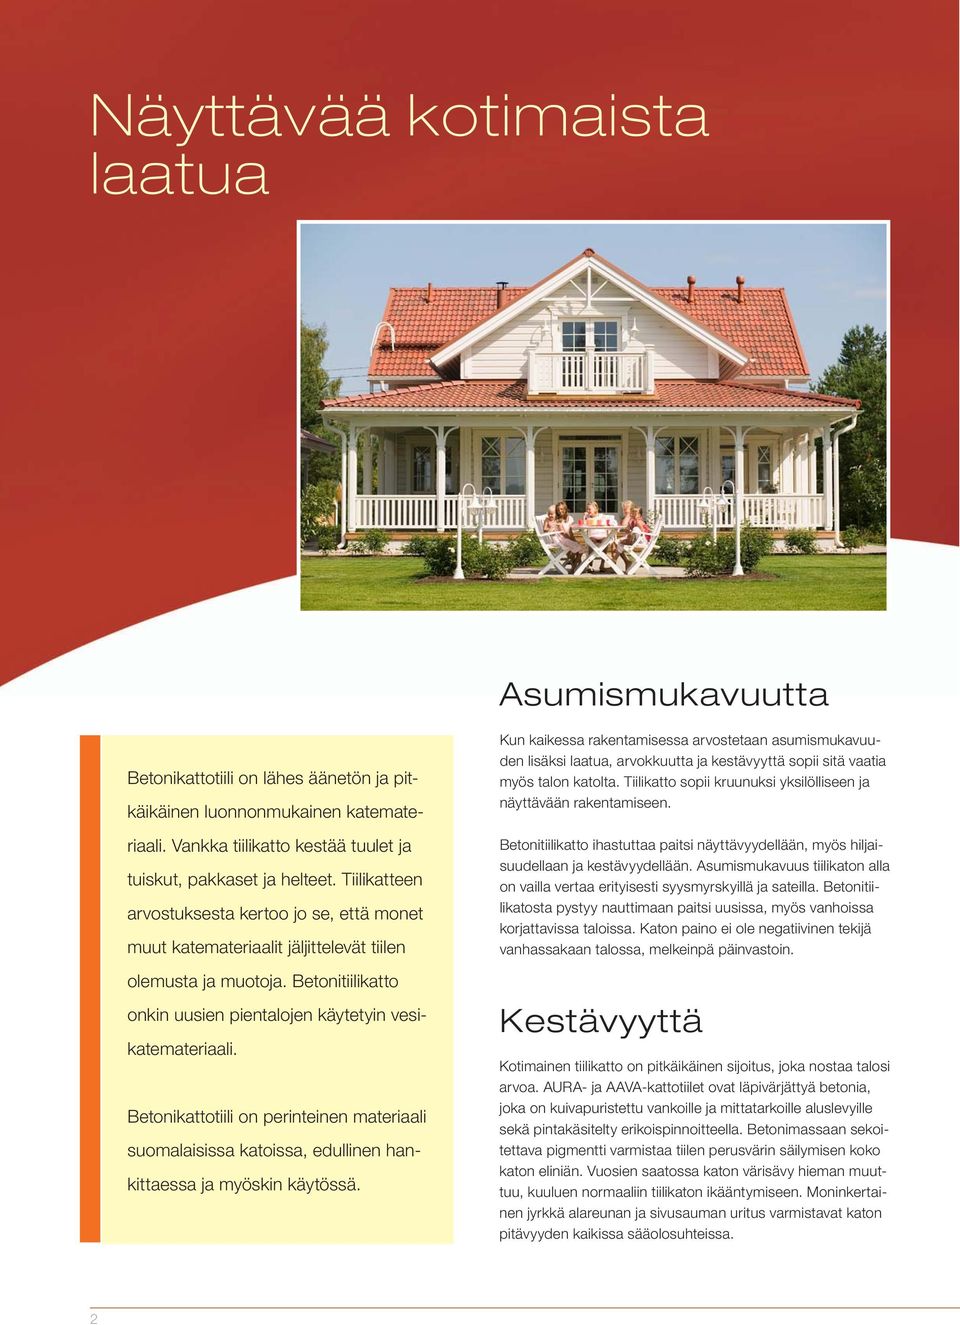 Betonikattotiili on perinteinen materiaali suomalaisissa katoissa, edullinen hankittaessa ja myöskin käytössä.